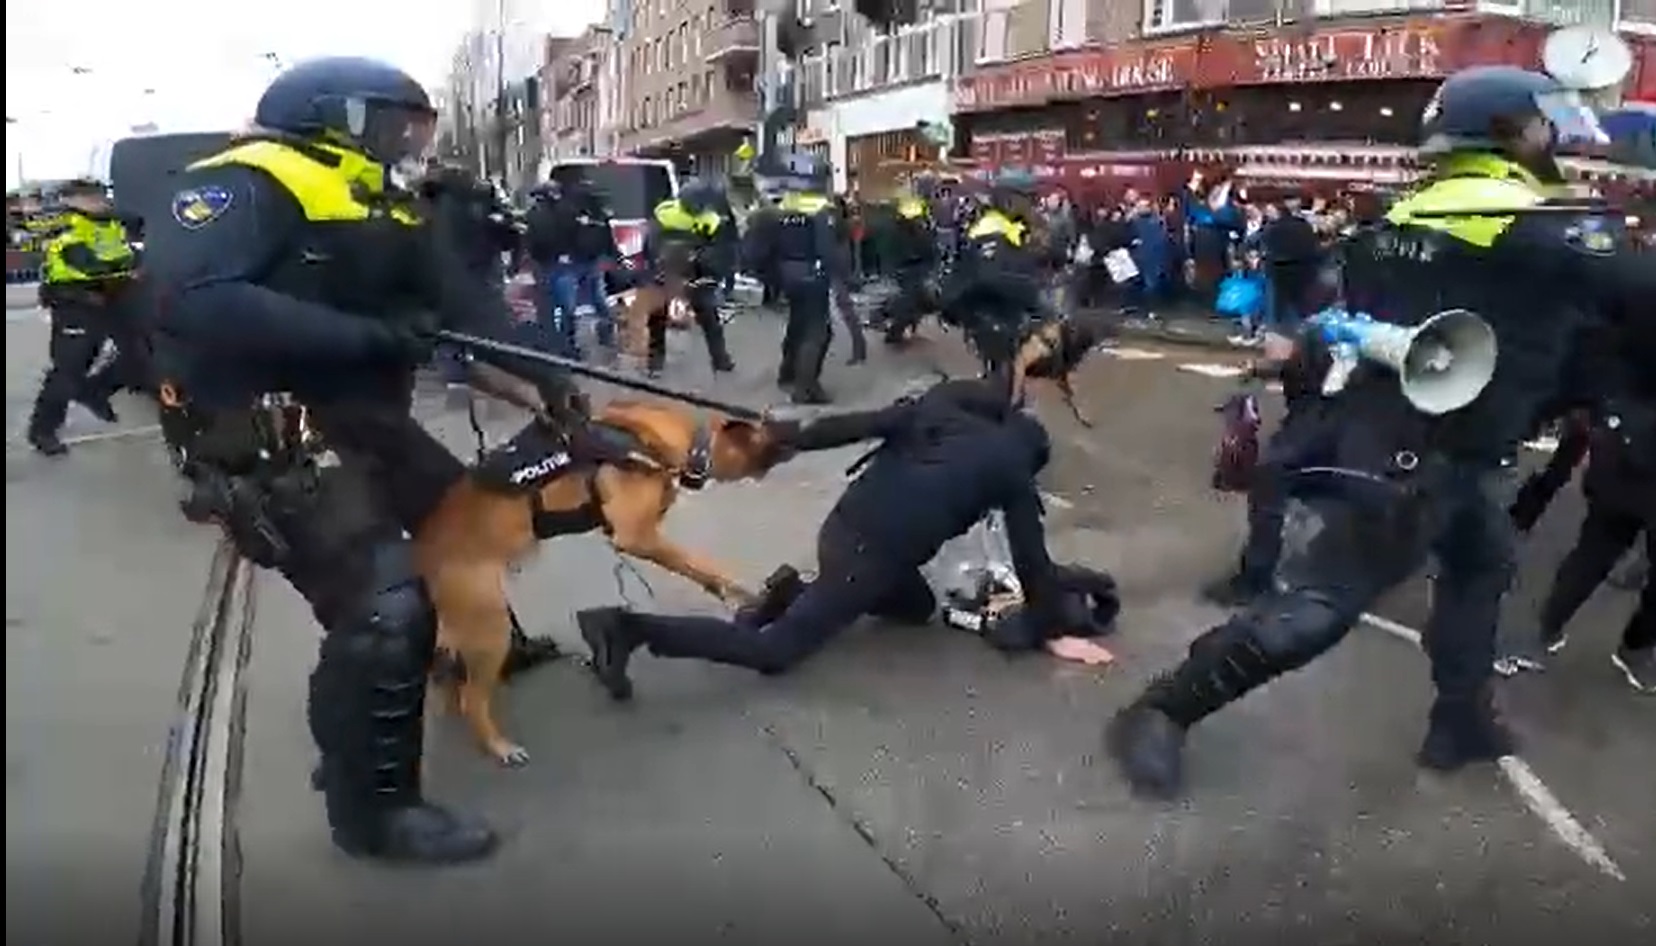 شاهد.. الشرطة الهولندية تقمع متظاهرين ضد قيود كورونا بالضرب و"كلب" ينهش ذراع أحد المحتجين